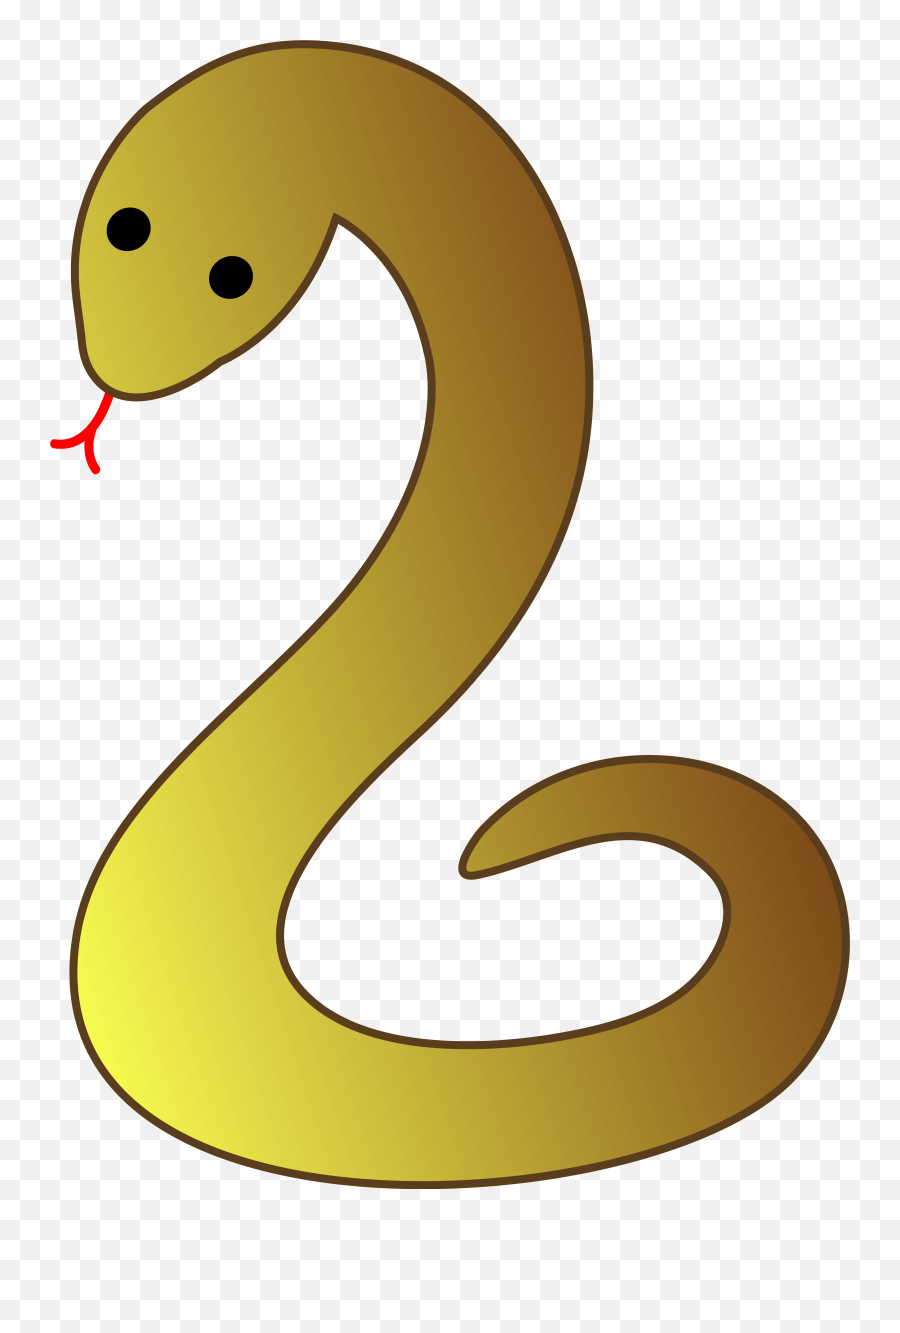 Snake Emoji This Green Snakes Coiled - Black Mamba Snake Cartoon,Snake Emoji Png